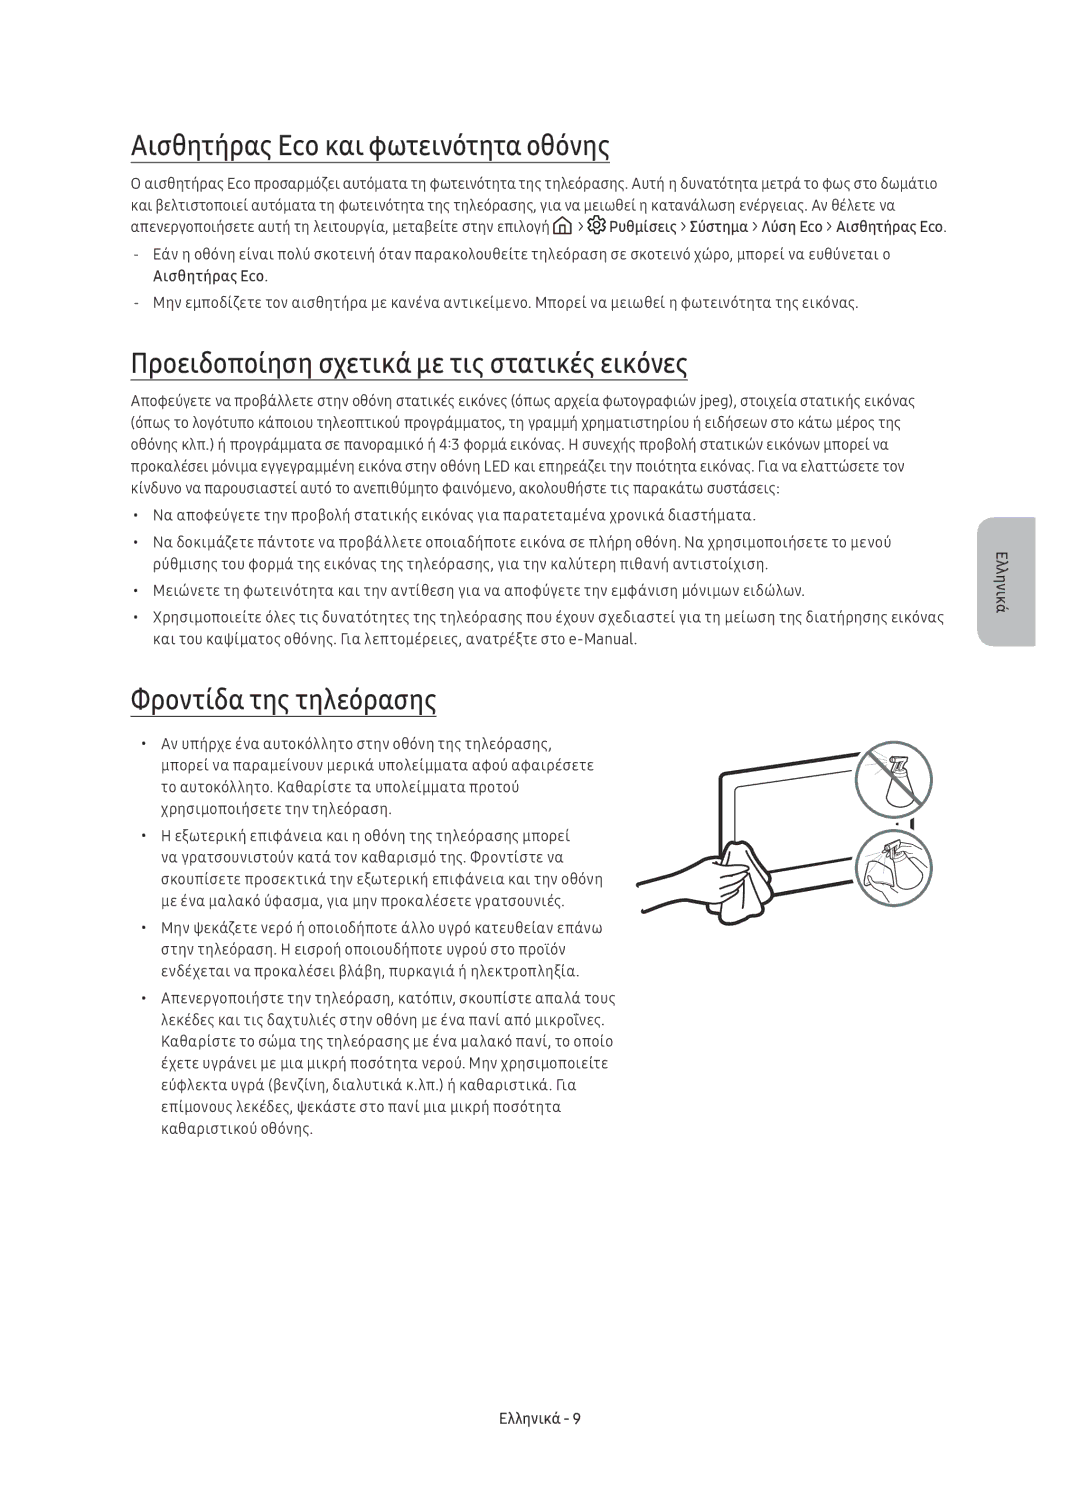 Samsung UE78KU6502UXXH manual Αισθητήρας Eco και φωτεινότητα οθόνης, Προειδοποίηση σχετικά με τις στατικές εικόνες 